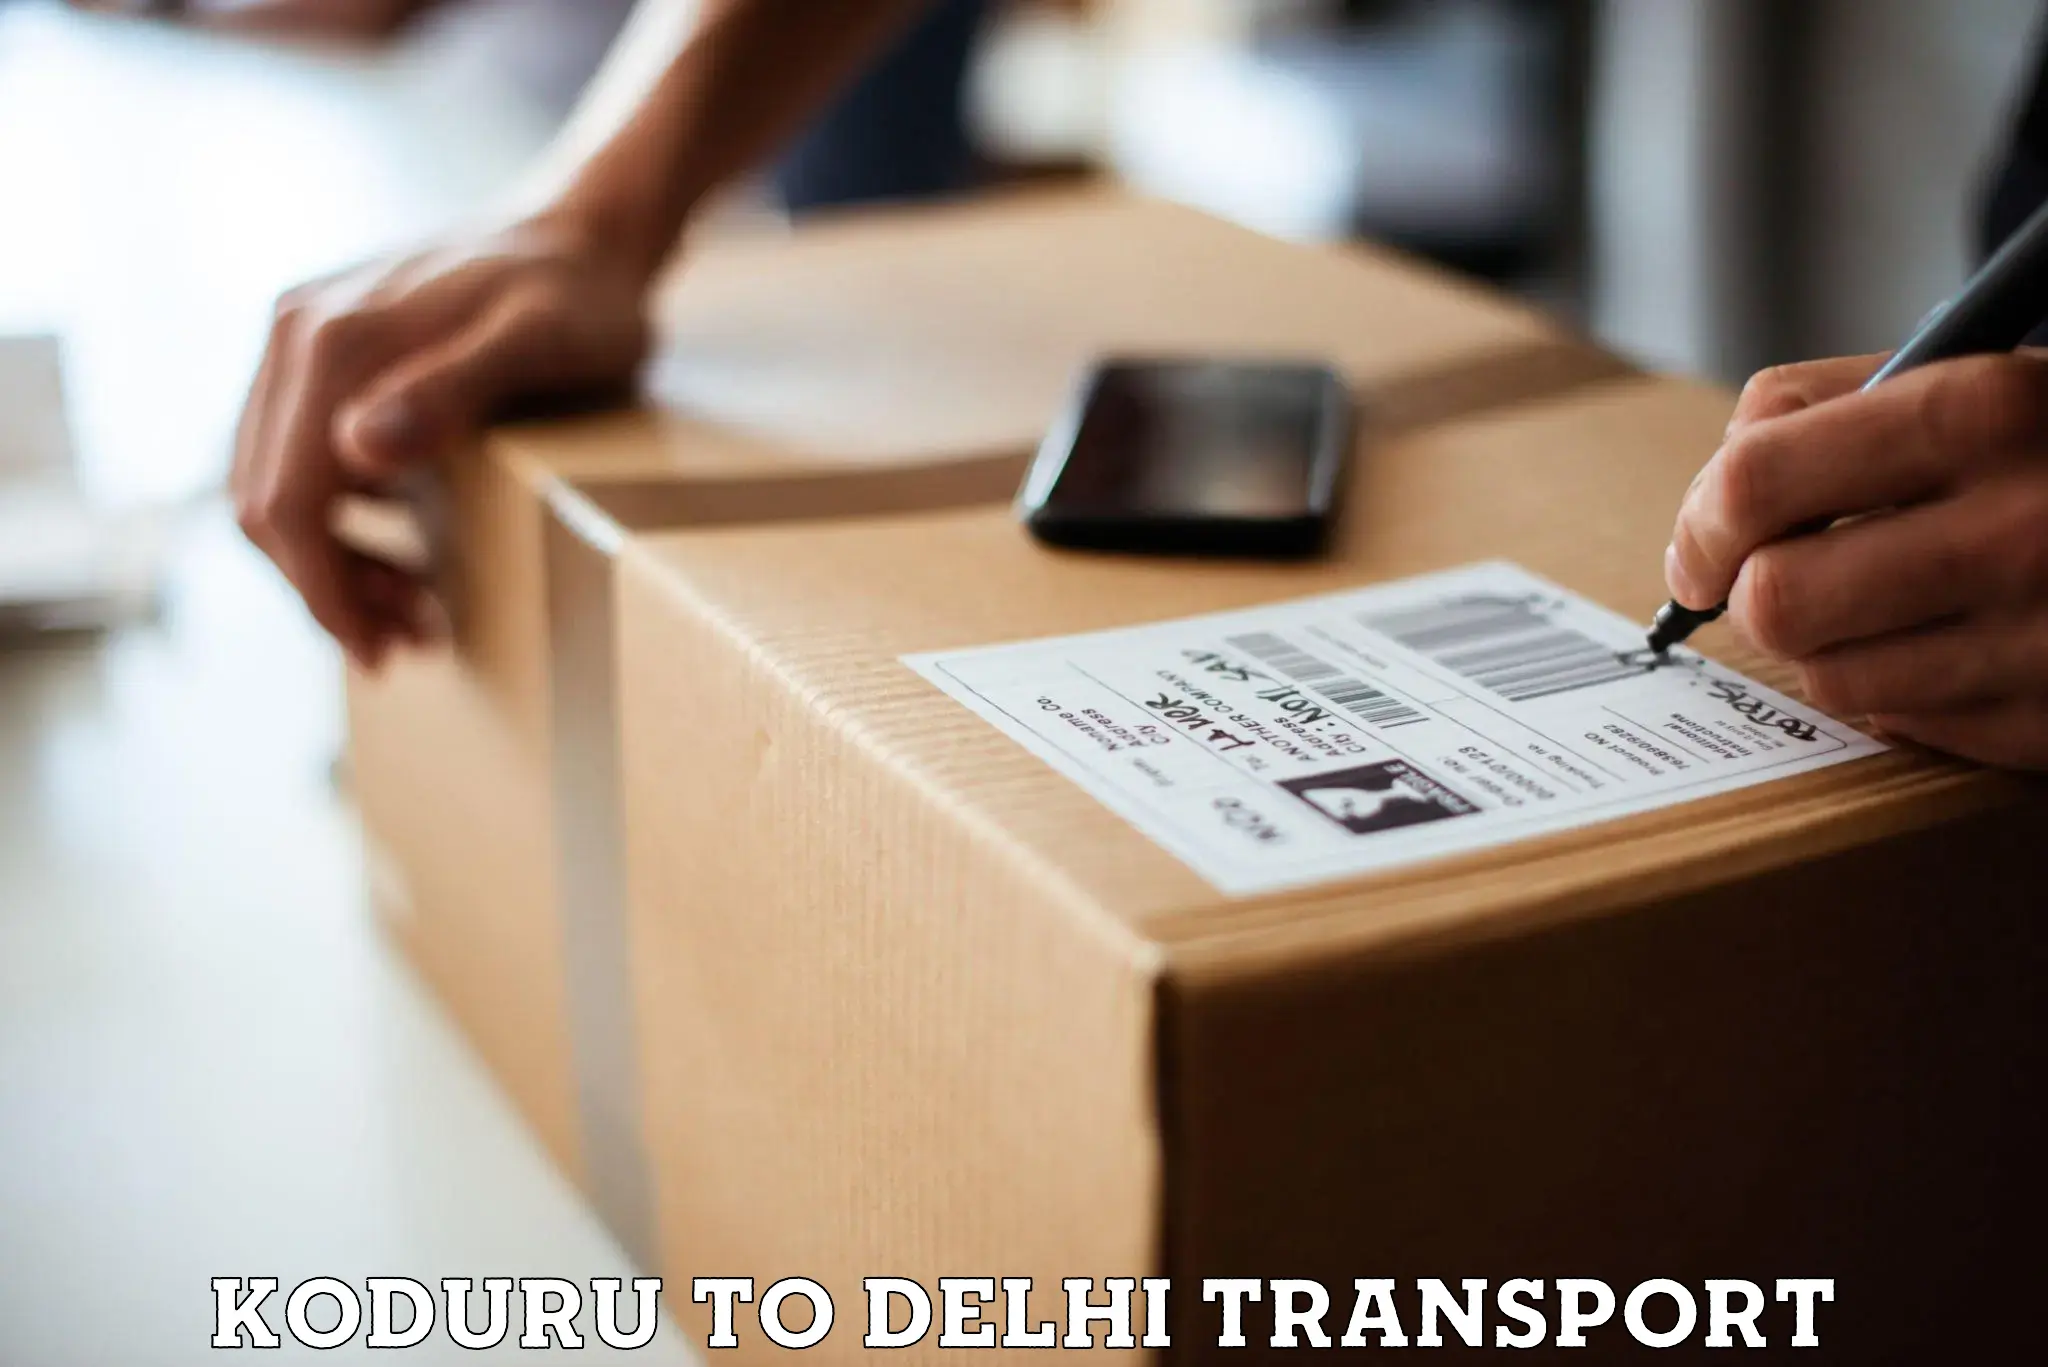 Interstate transport services Koduru to NIT Delhi